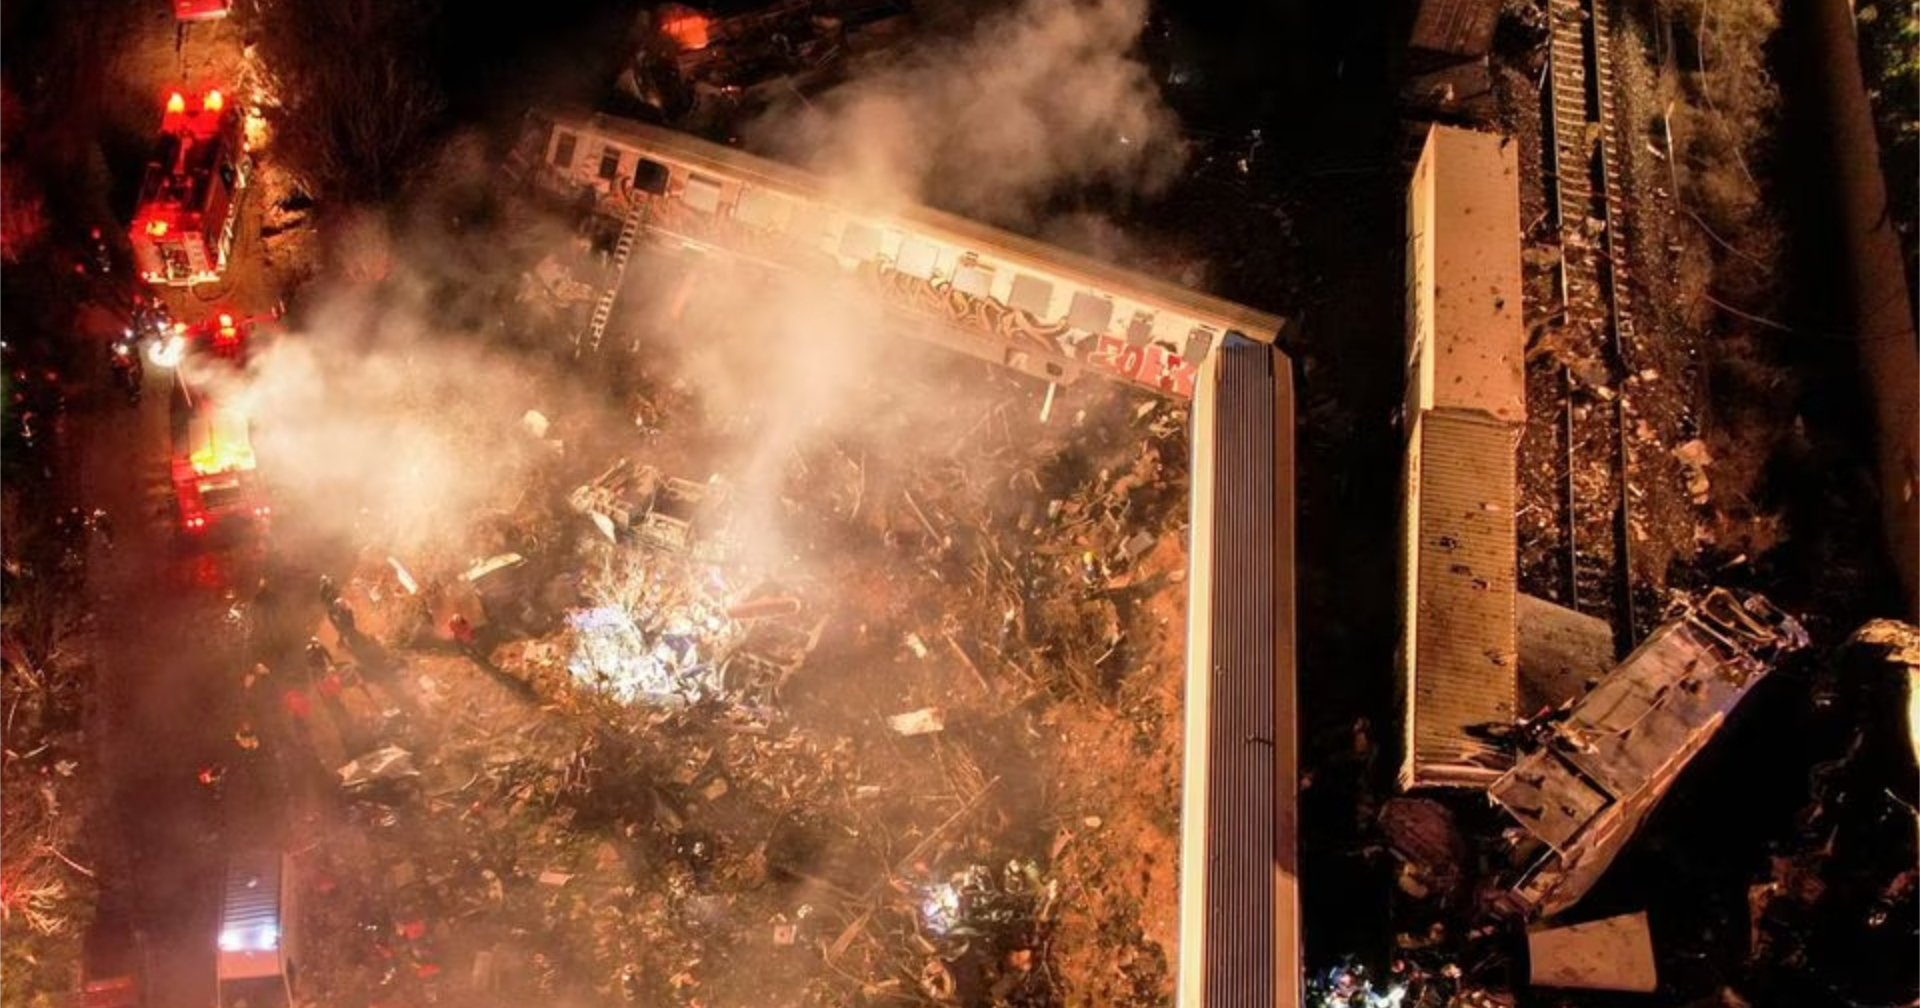 เกิดเหตุรถไฟ 2 ขบวน ชนกันในประเทศกรีซ พบผู้เสียชีวิตแล้ว 26 ราย บาดเจ็บเกือบร้อย